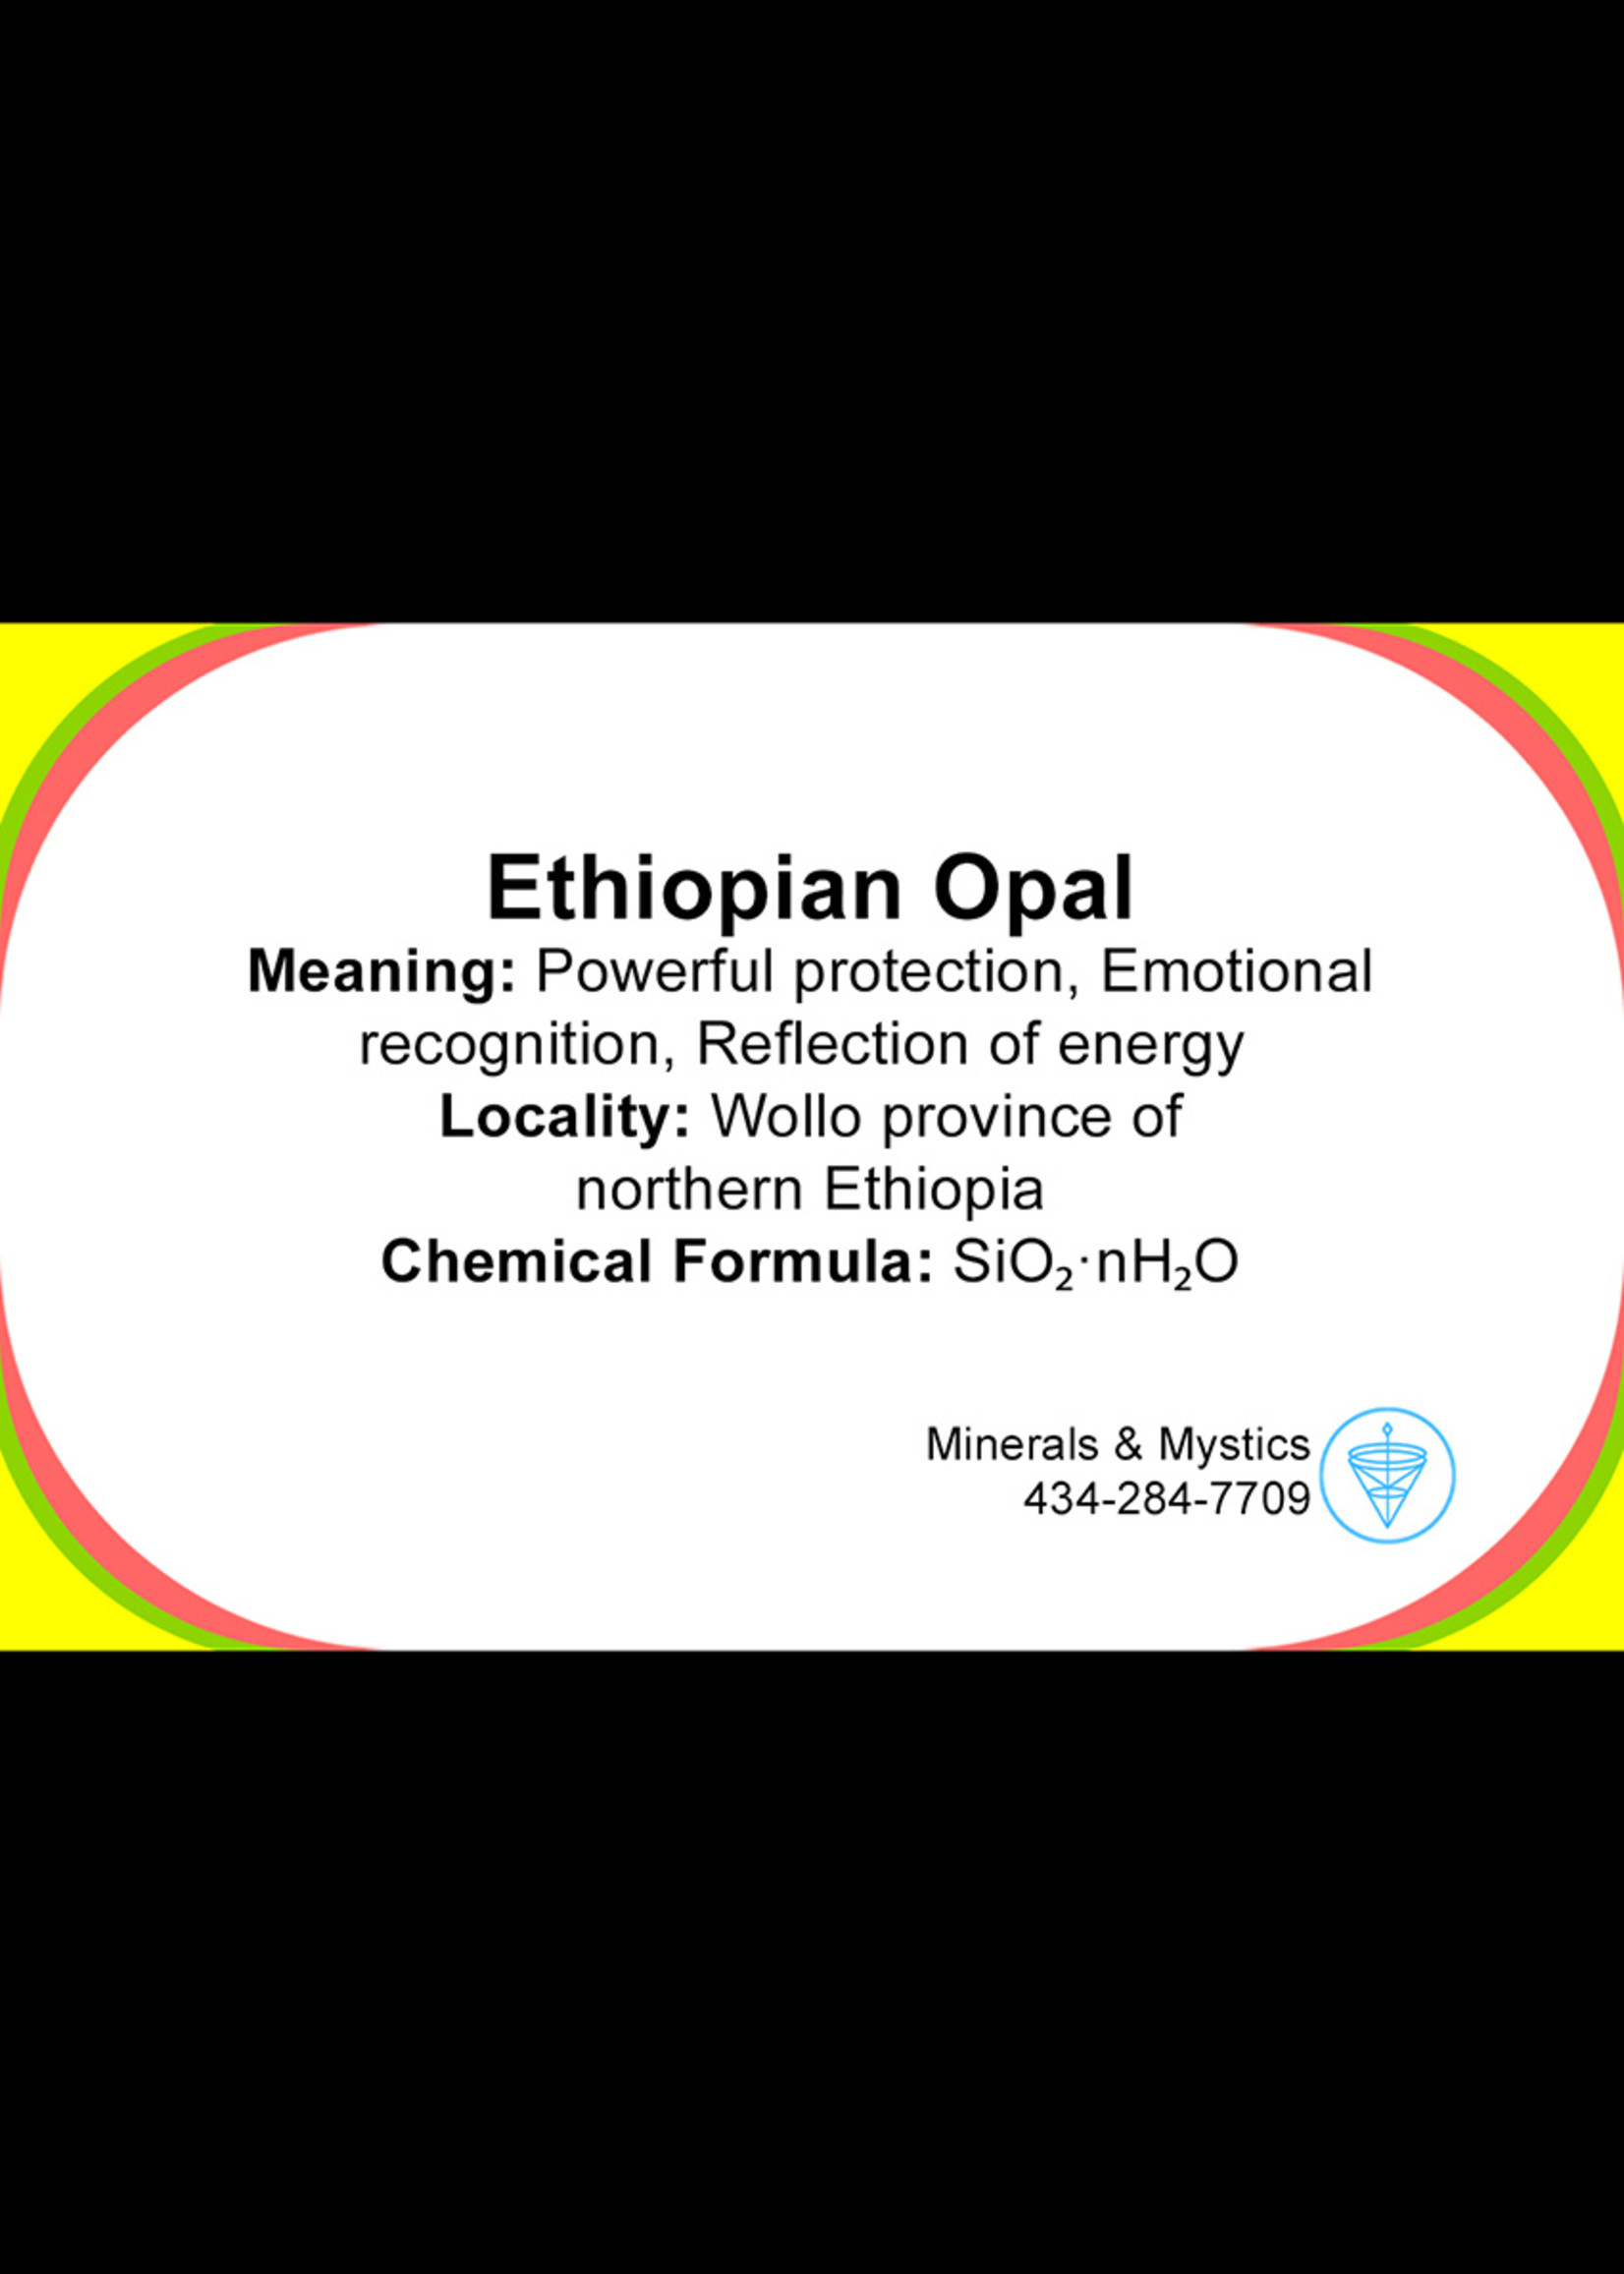 Minerals & Mystics Ethiopian Opal